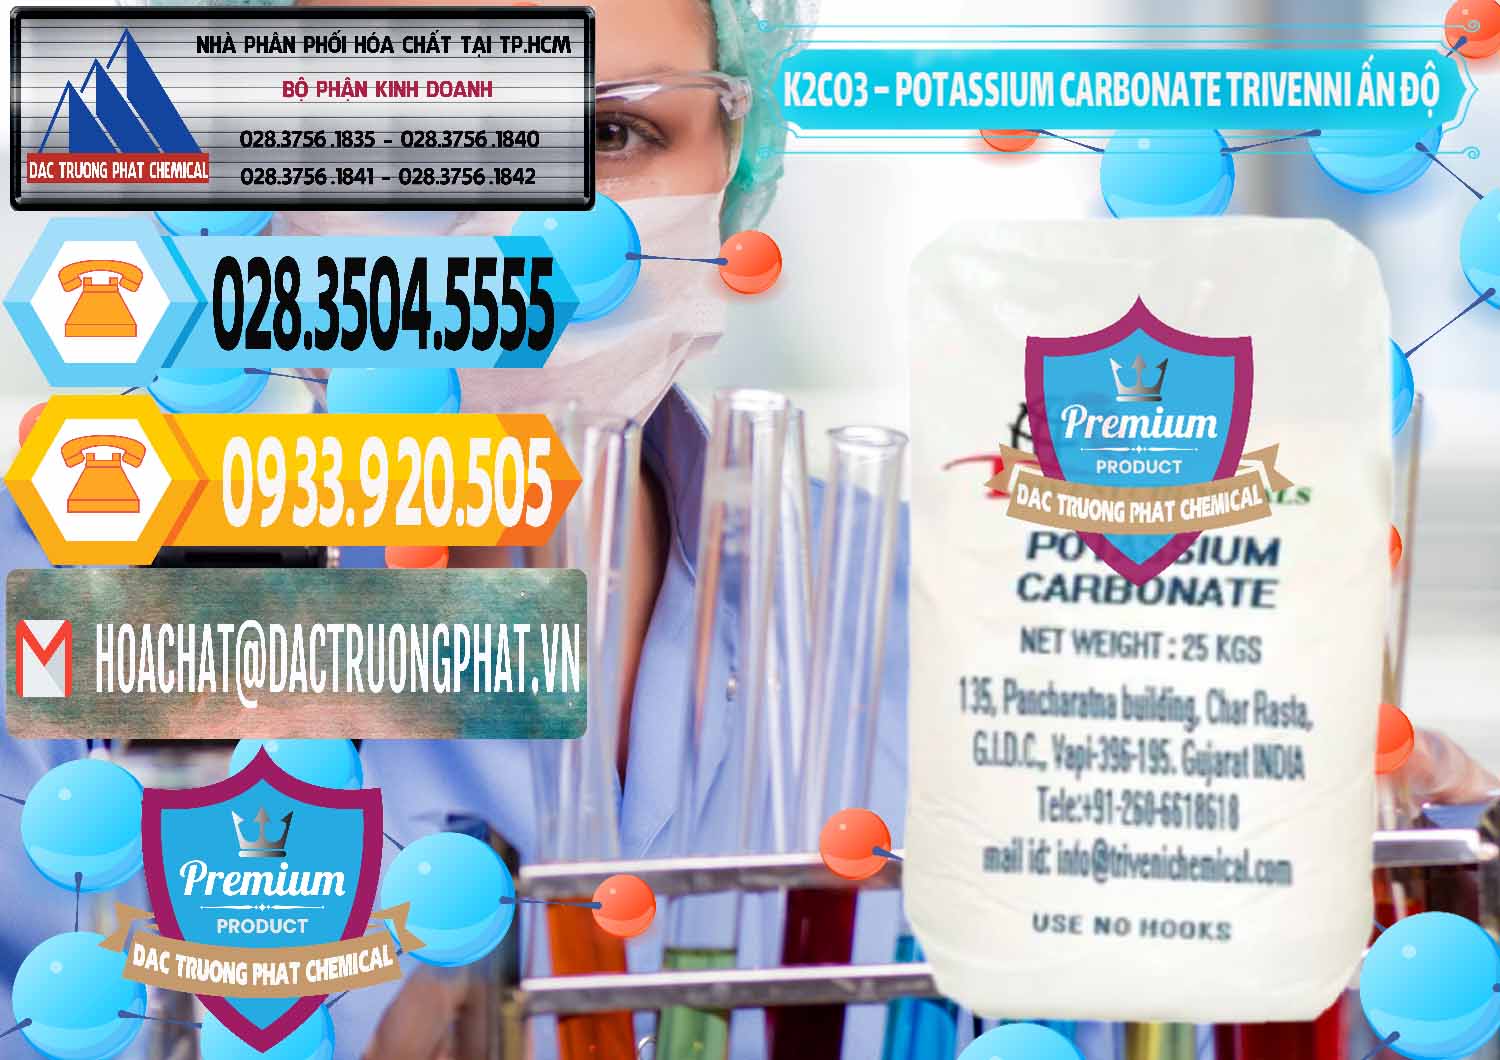 Cty chuyên cung cấp - bán K2Co3 – Potassium Carbonate Trivenni Ấn Độ India - 0473 - Chuyên phân phối - nhập khẩu hóa chất tại TP.HCM - hoachattayrua.net